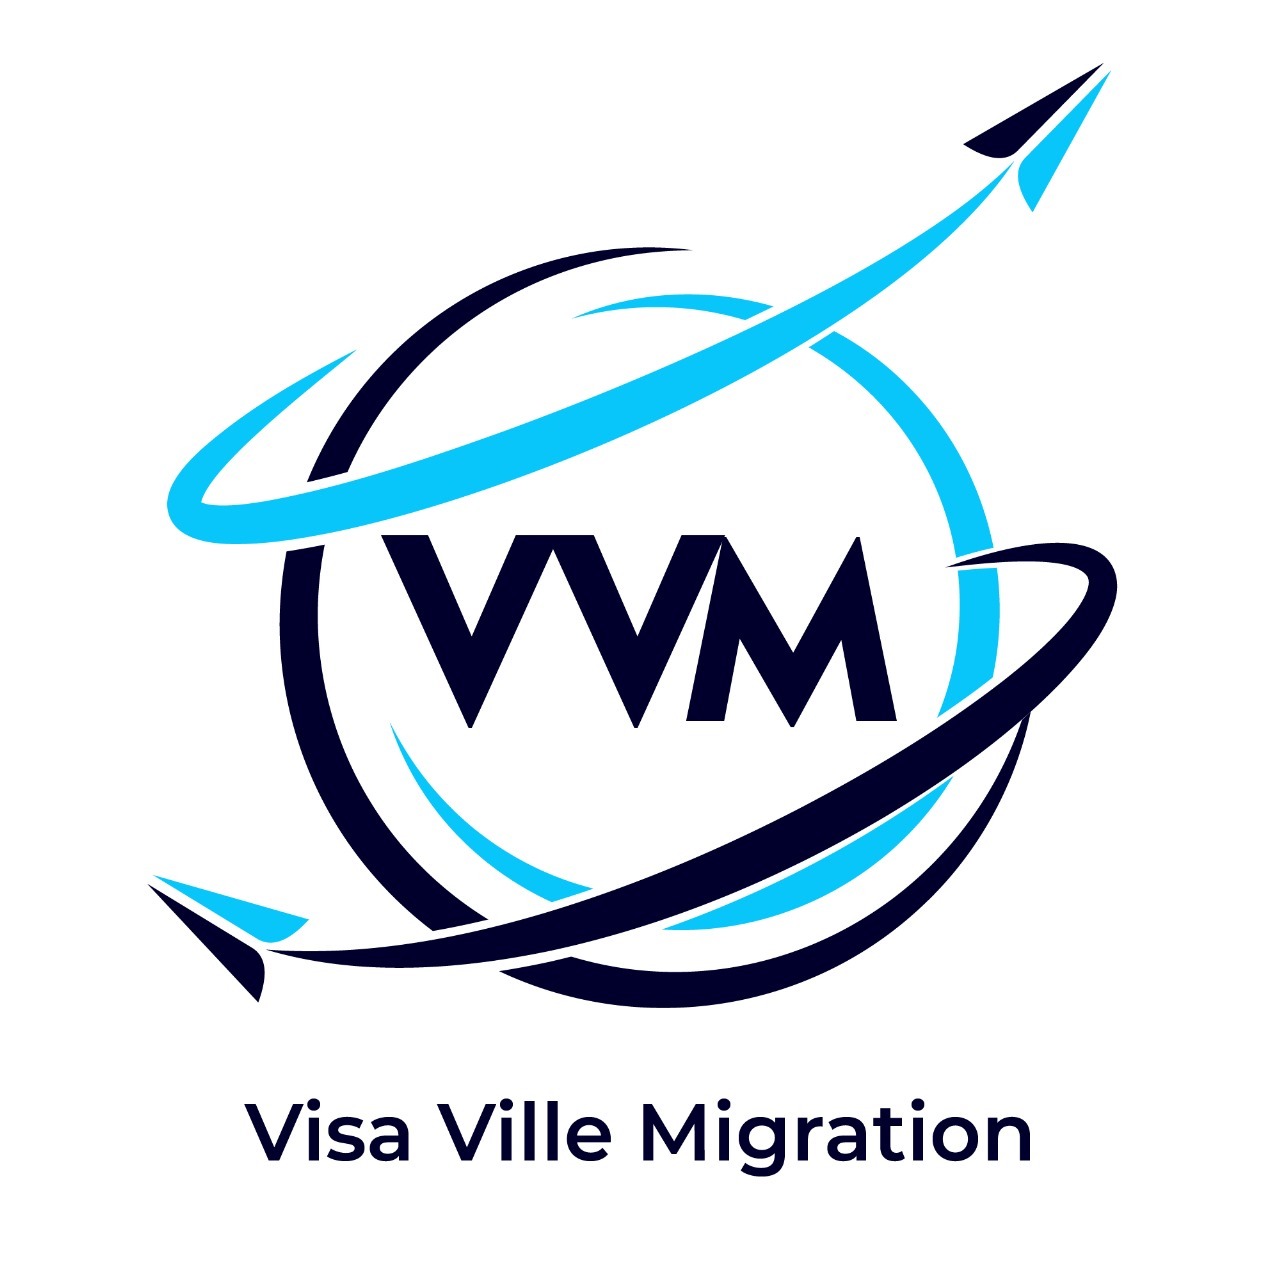 Visa Ville Migration